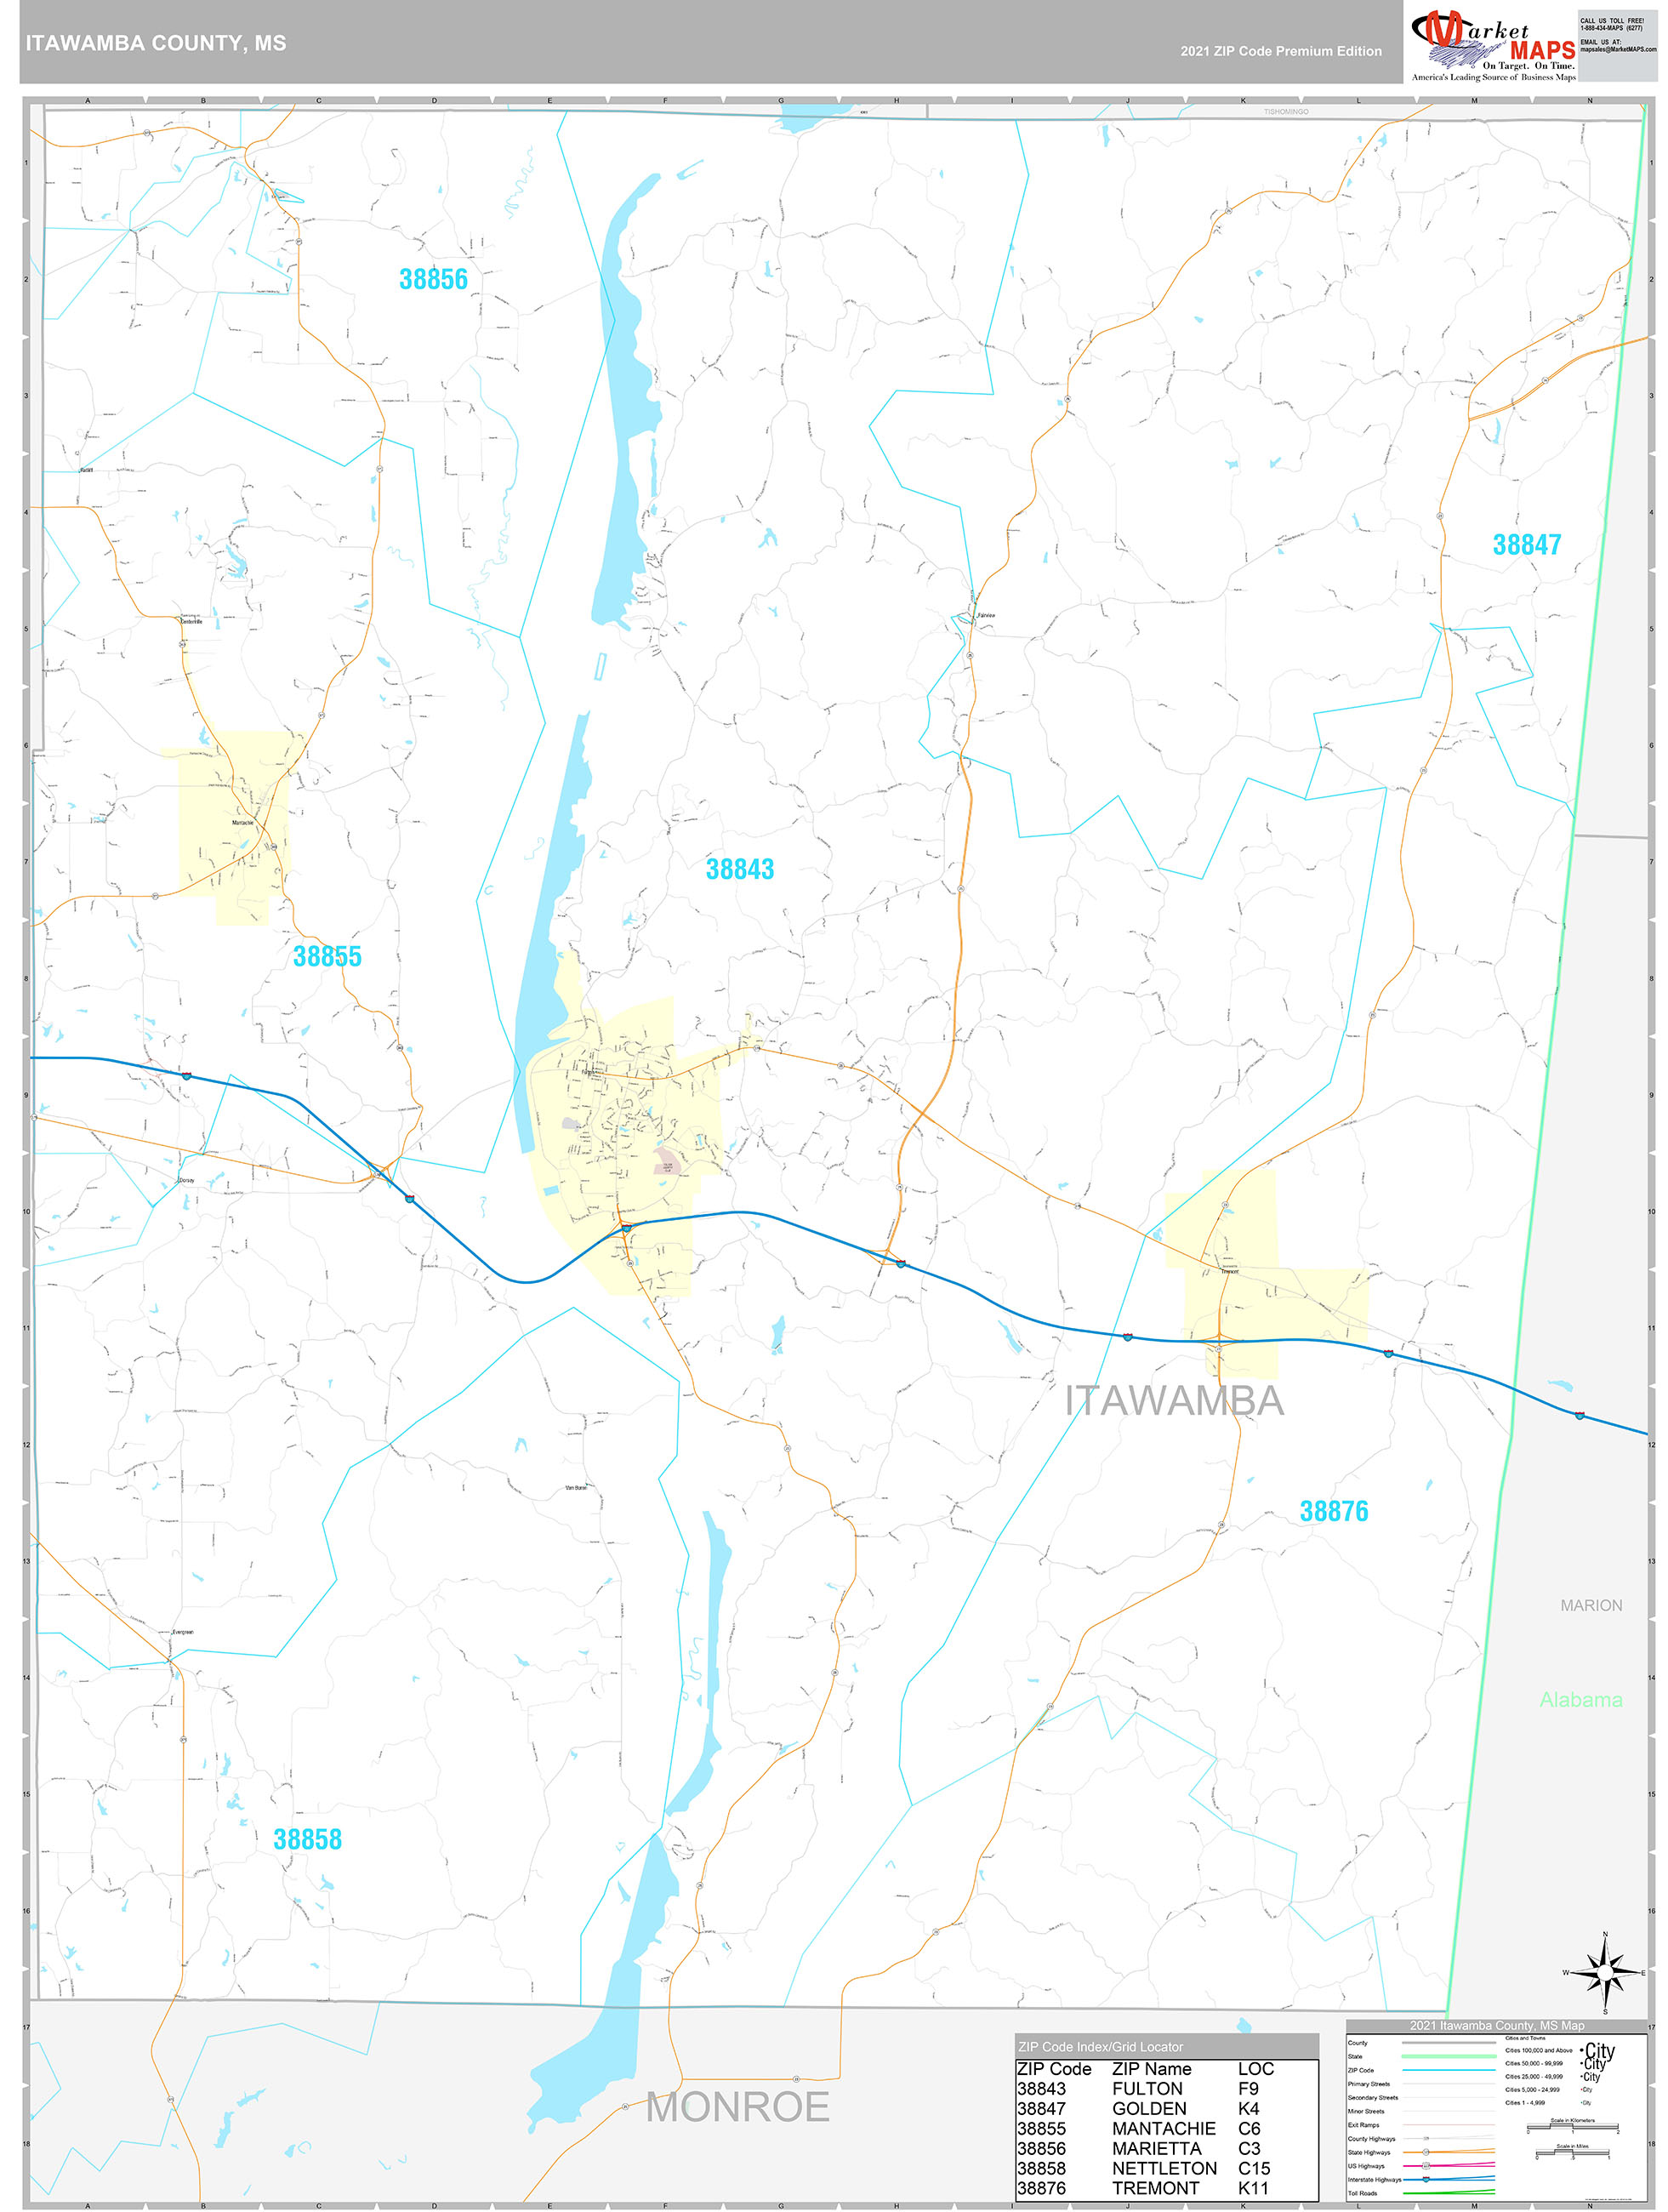 Itawamba County Ms Wall Map Premium Style By Marketmaps Mapsales 4131